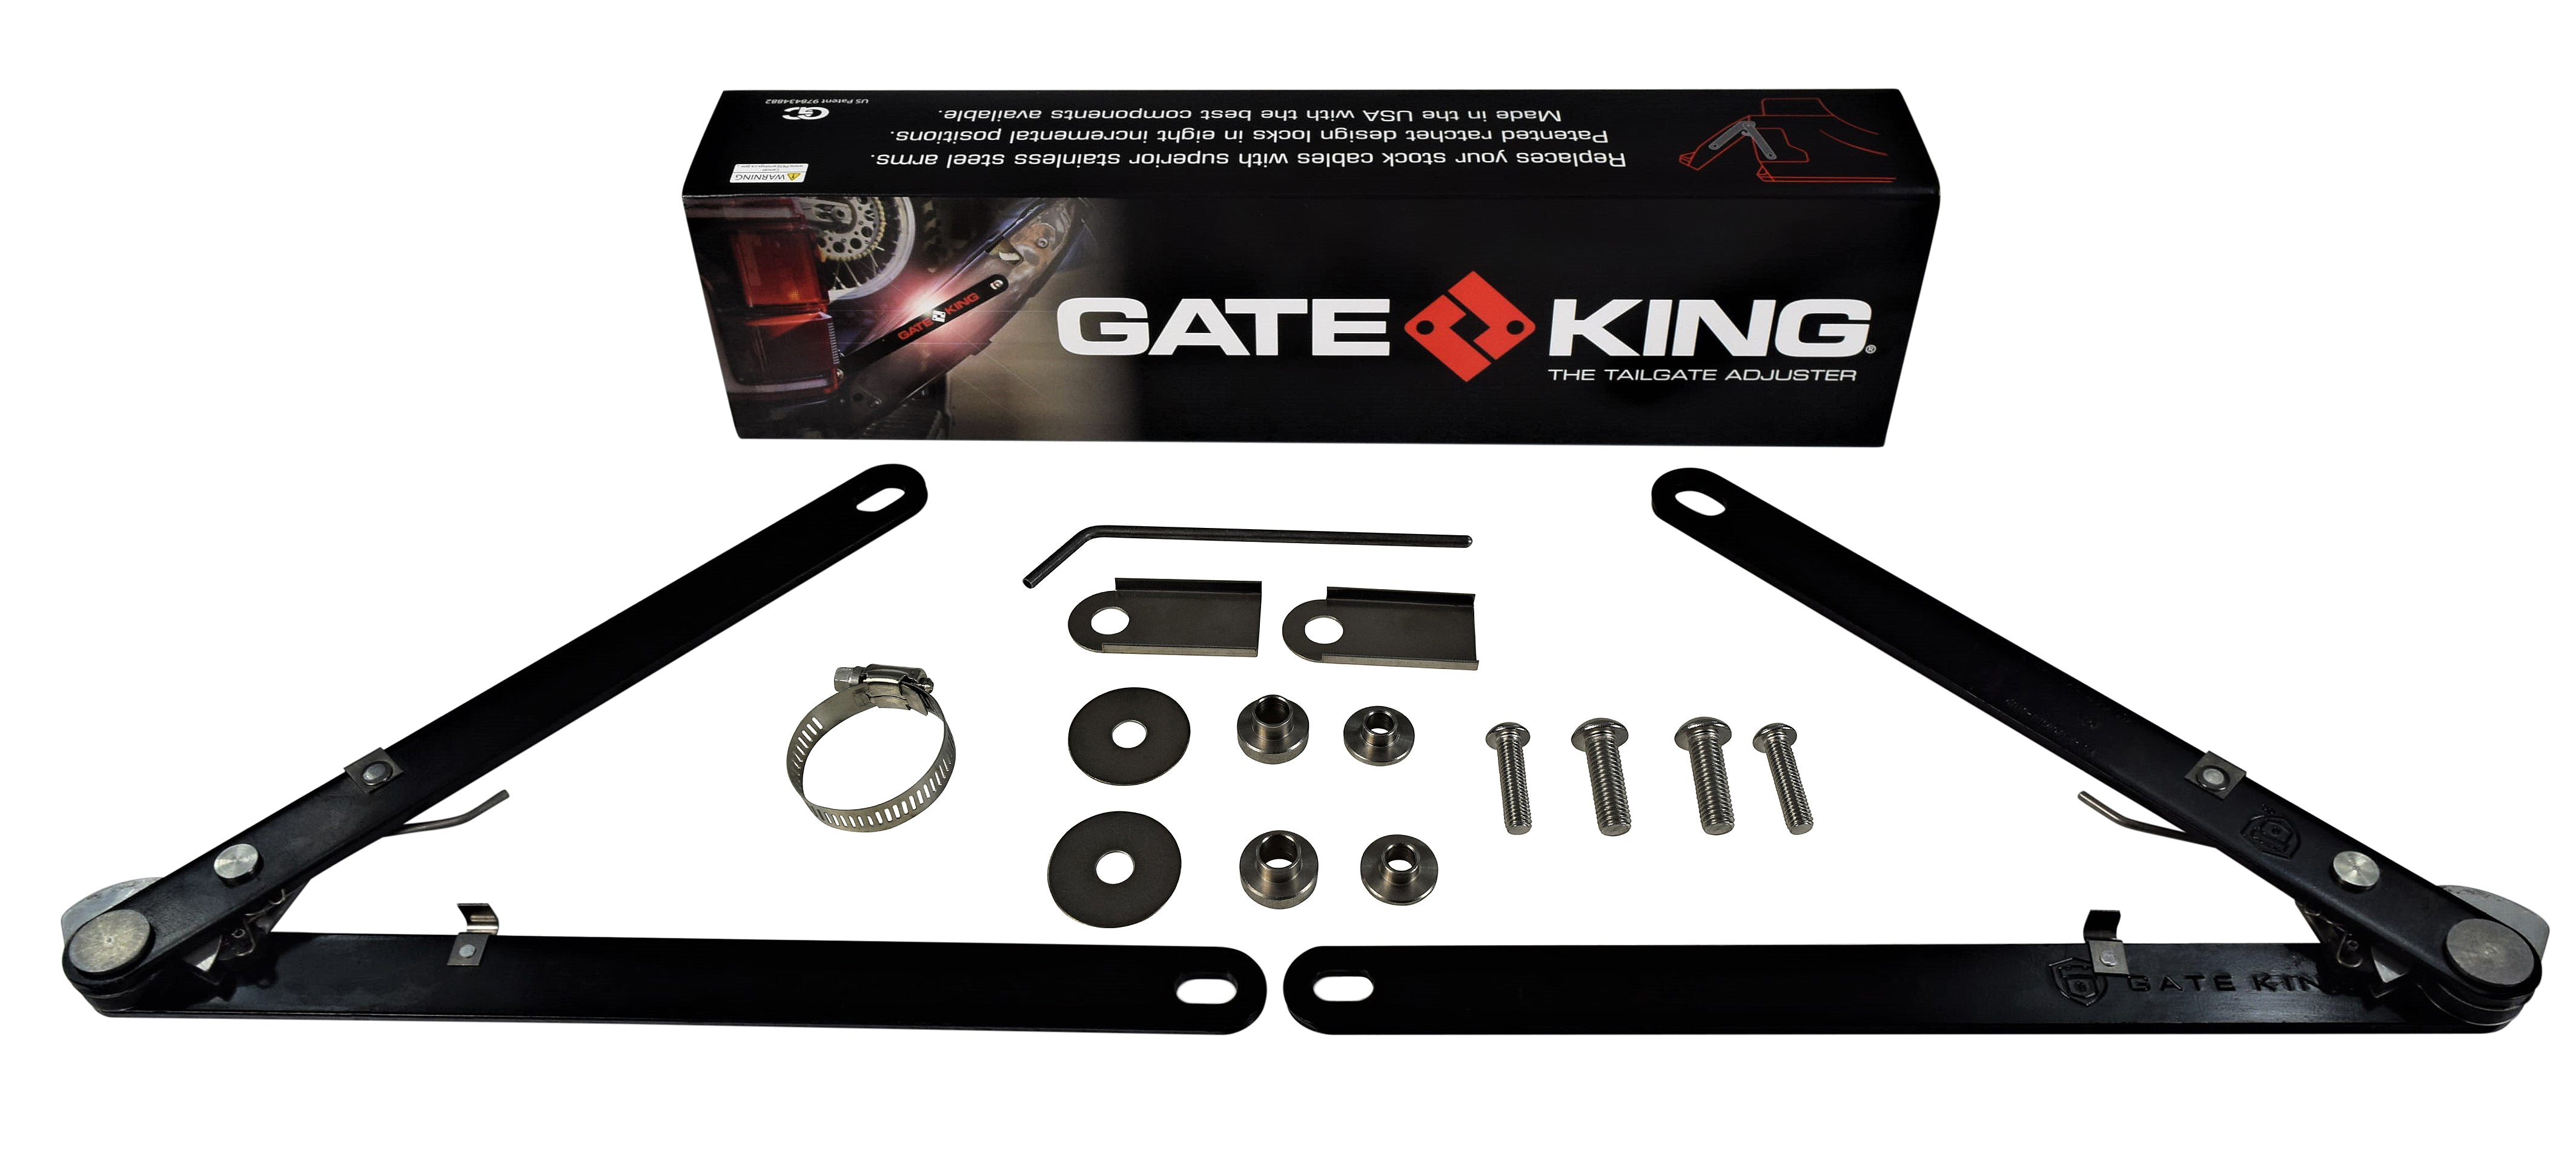 Gate-King-Dodge-2003-18-all-2002-1500-Tailgate-Adjuster-image-1